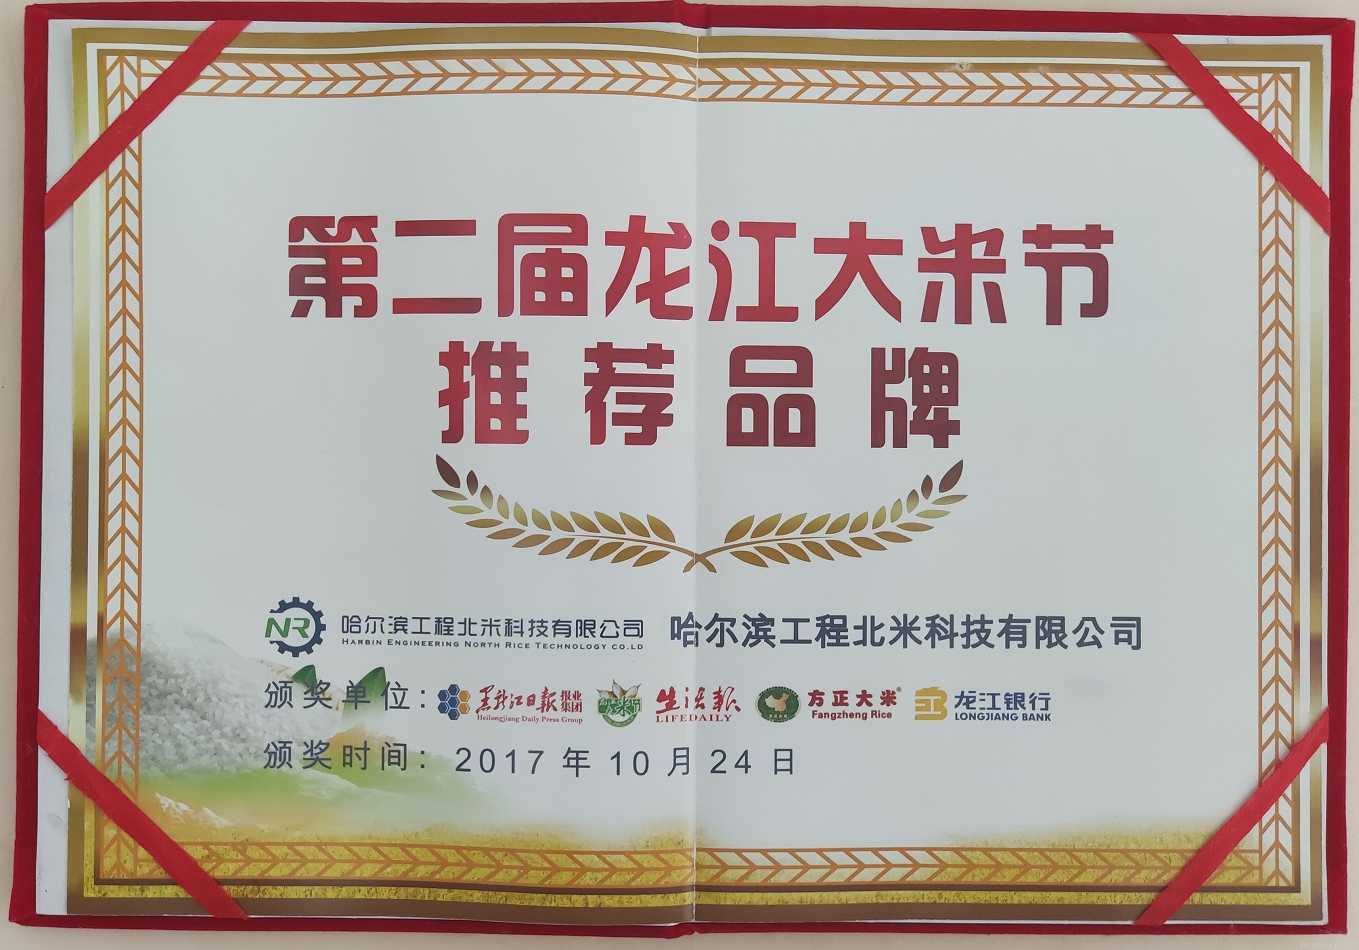 2017年获得第二届龙江大米节推荐品牌